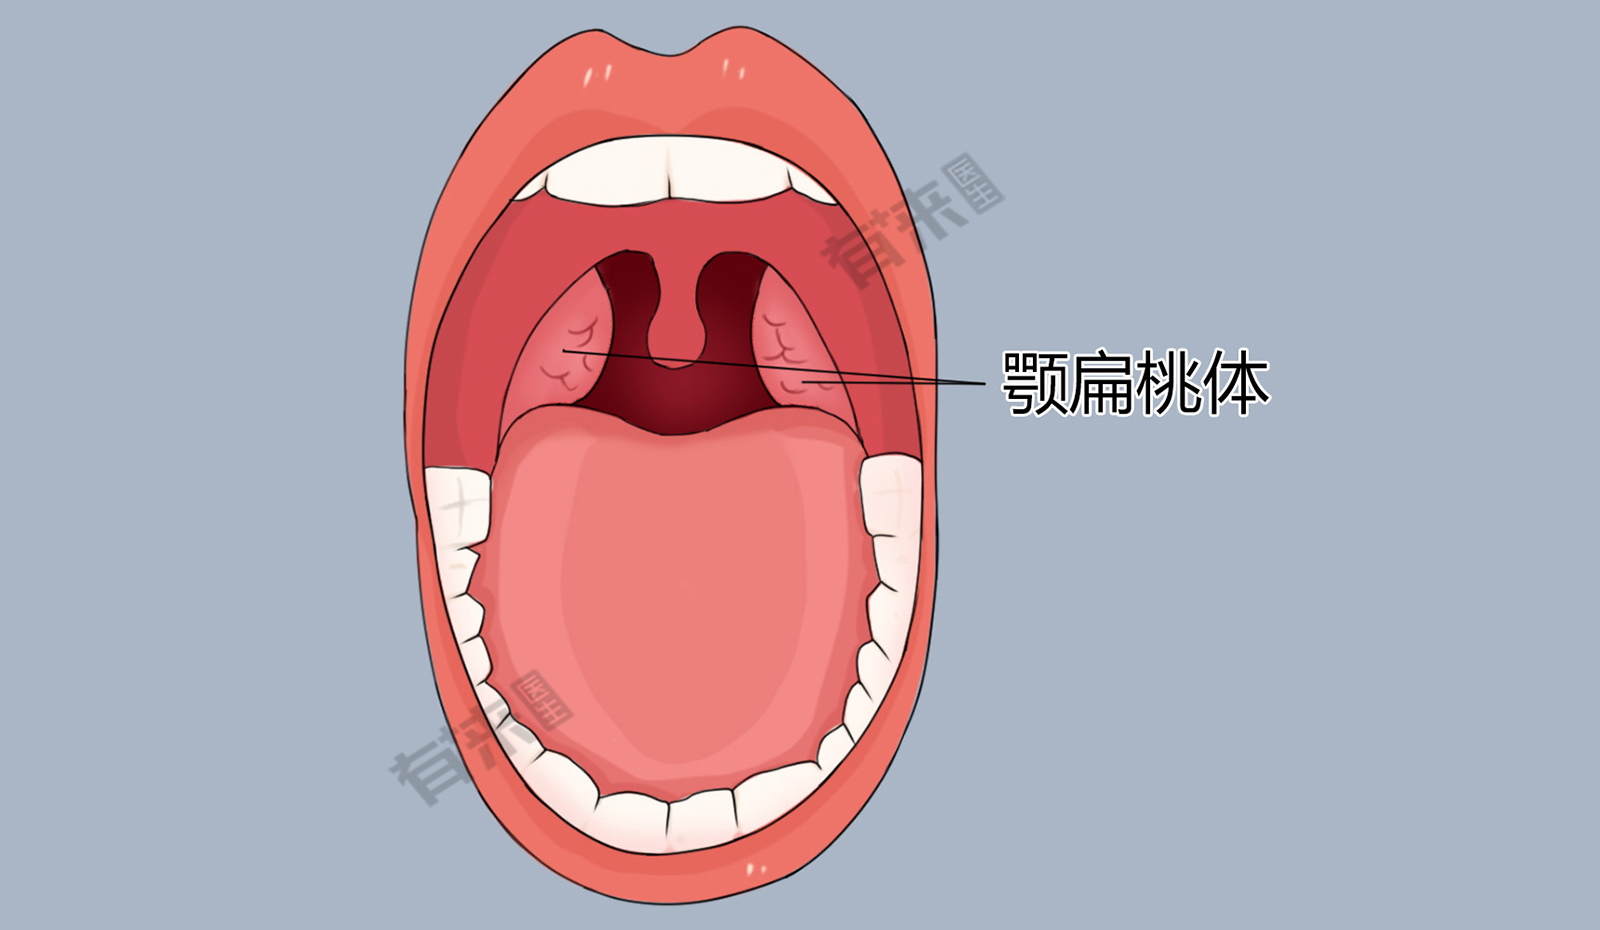 腭弓咽扁桃体图片